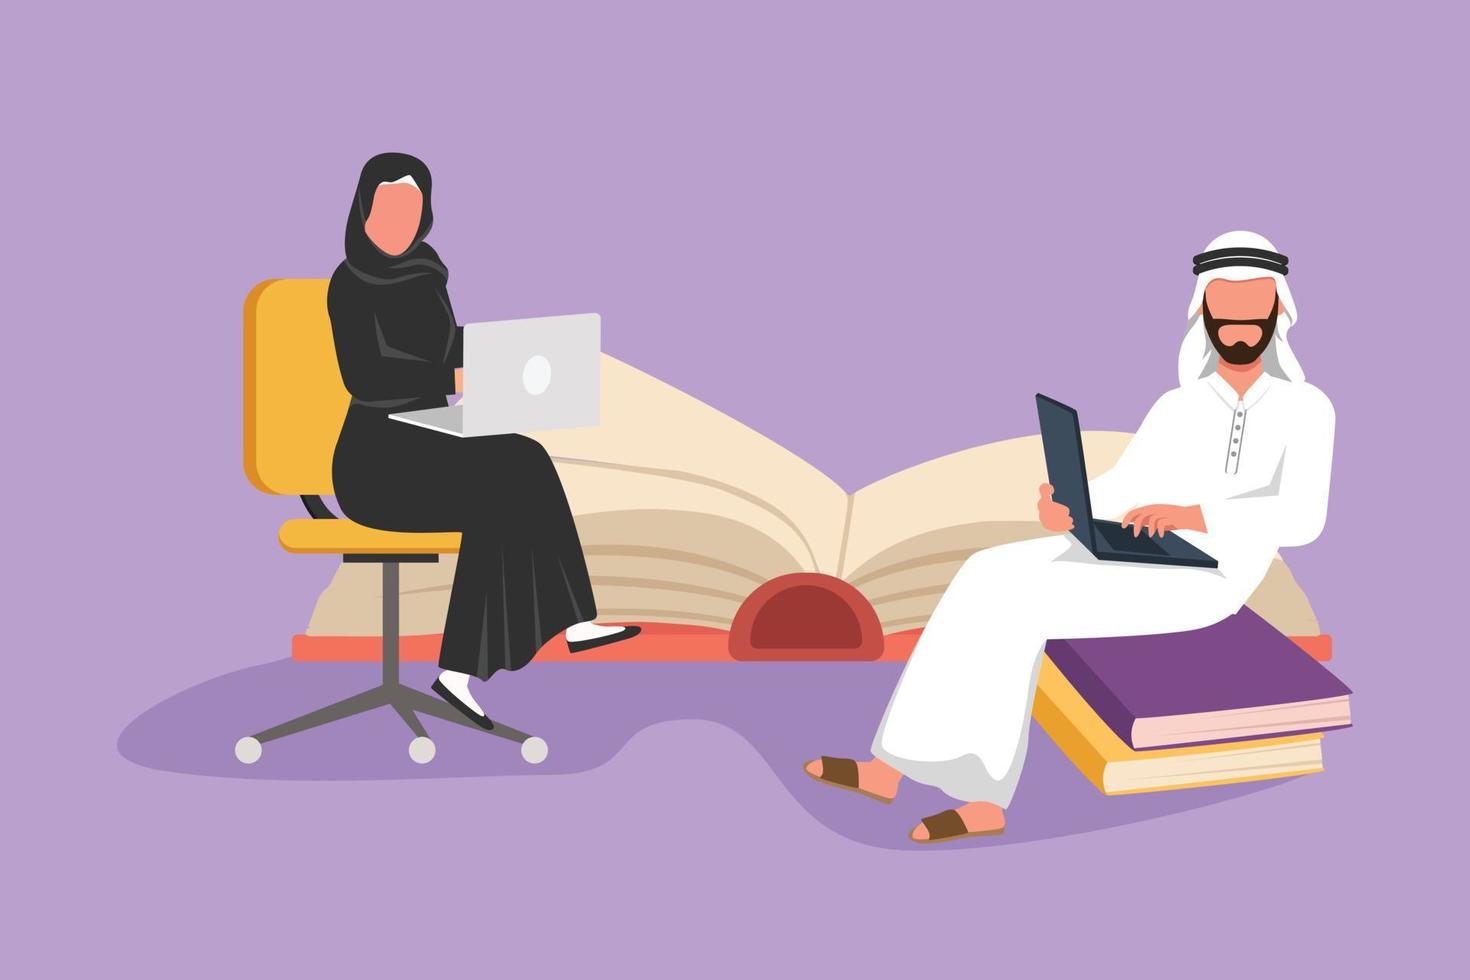 grafisches flaches Design Zeichnung Gruppe von Personen mit Laptop-Computer zu Hause. arabischer mann sitzt auf bücherstapel, frau sitzt auf stuhl, tippt oder lernt zusammen. Cartoon-Stil-Vektor-Illustration vektor